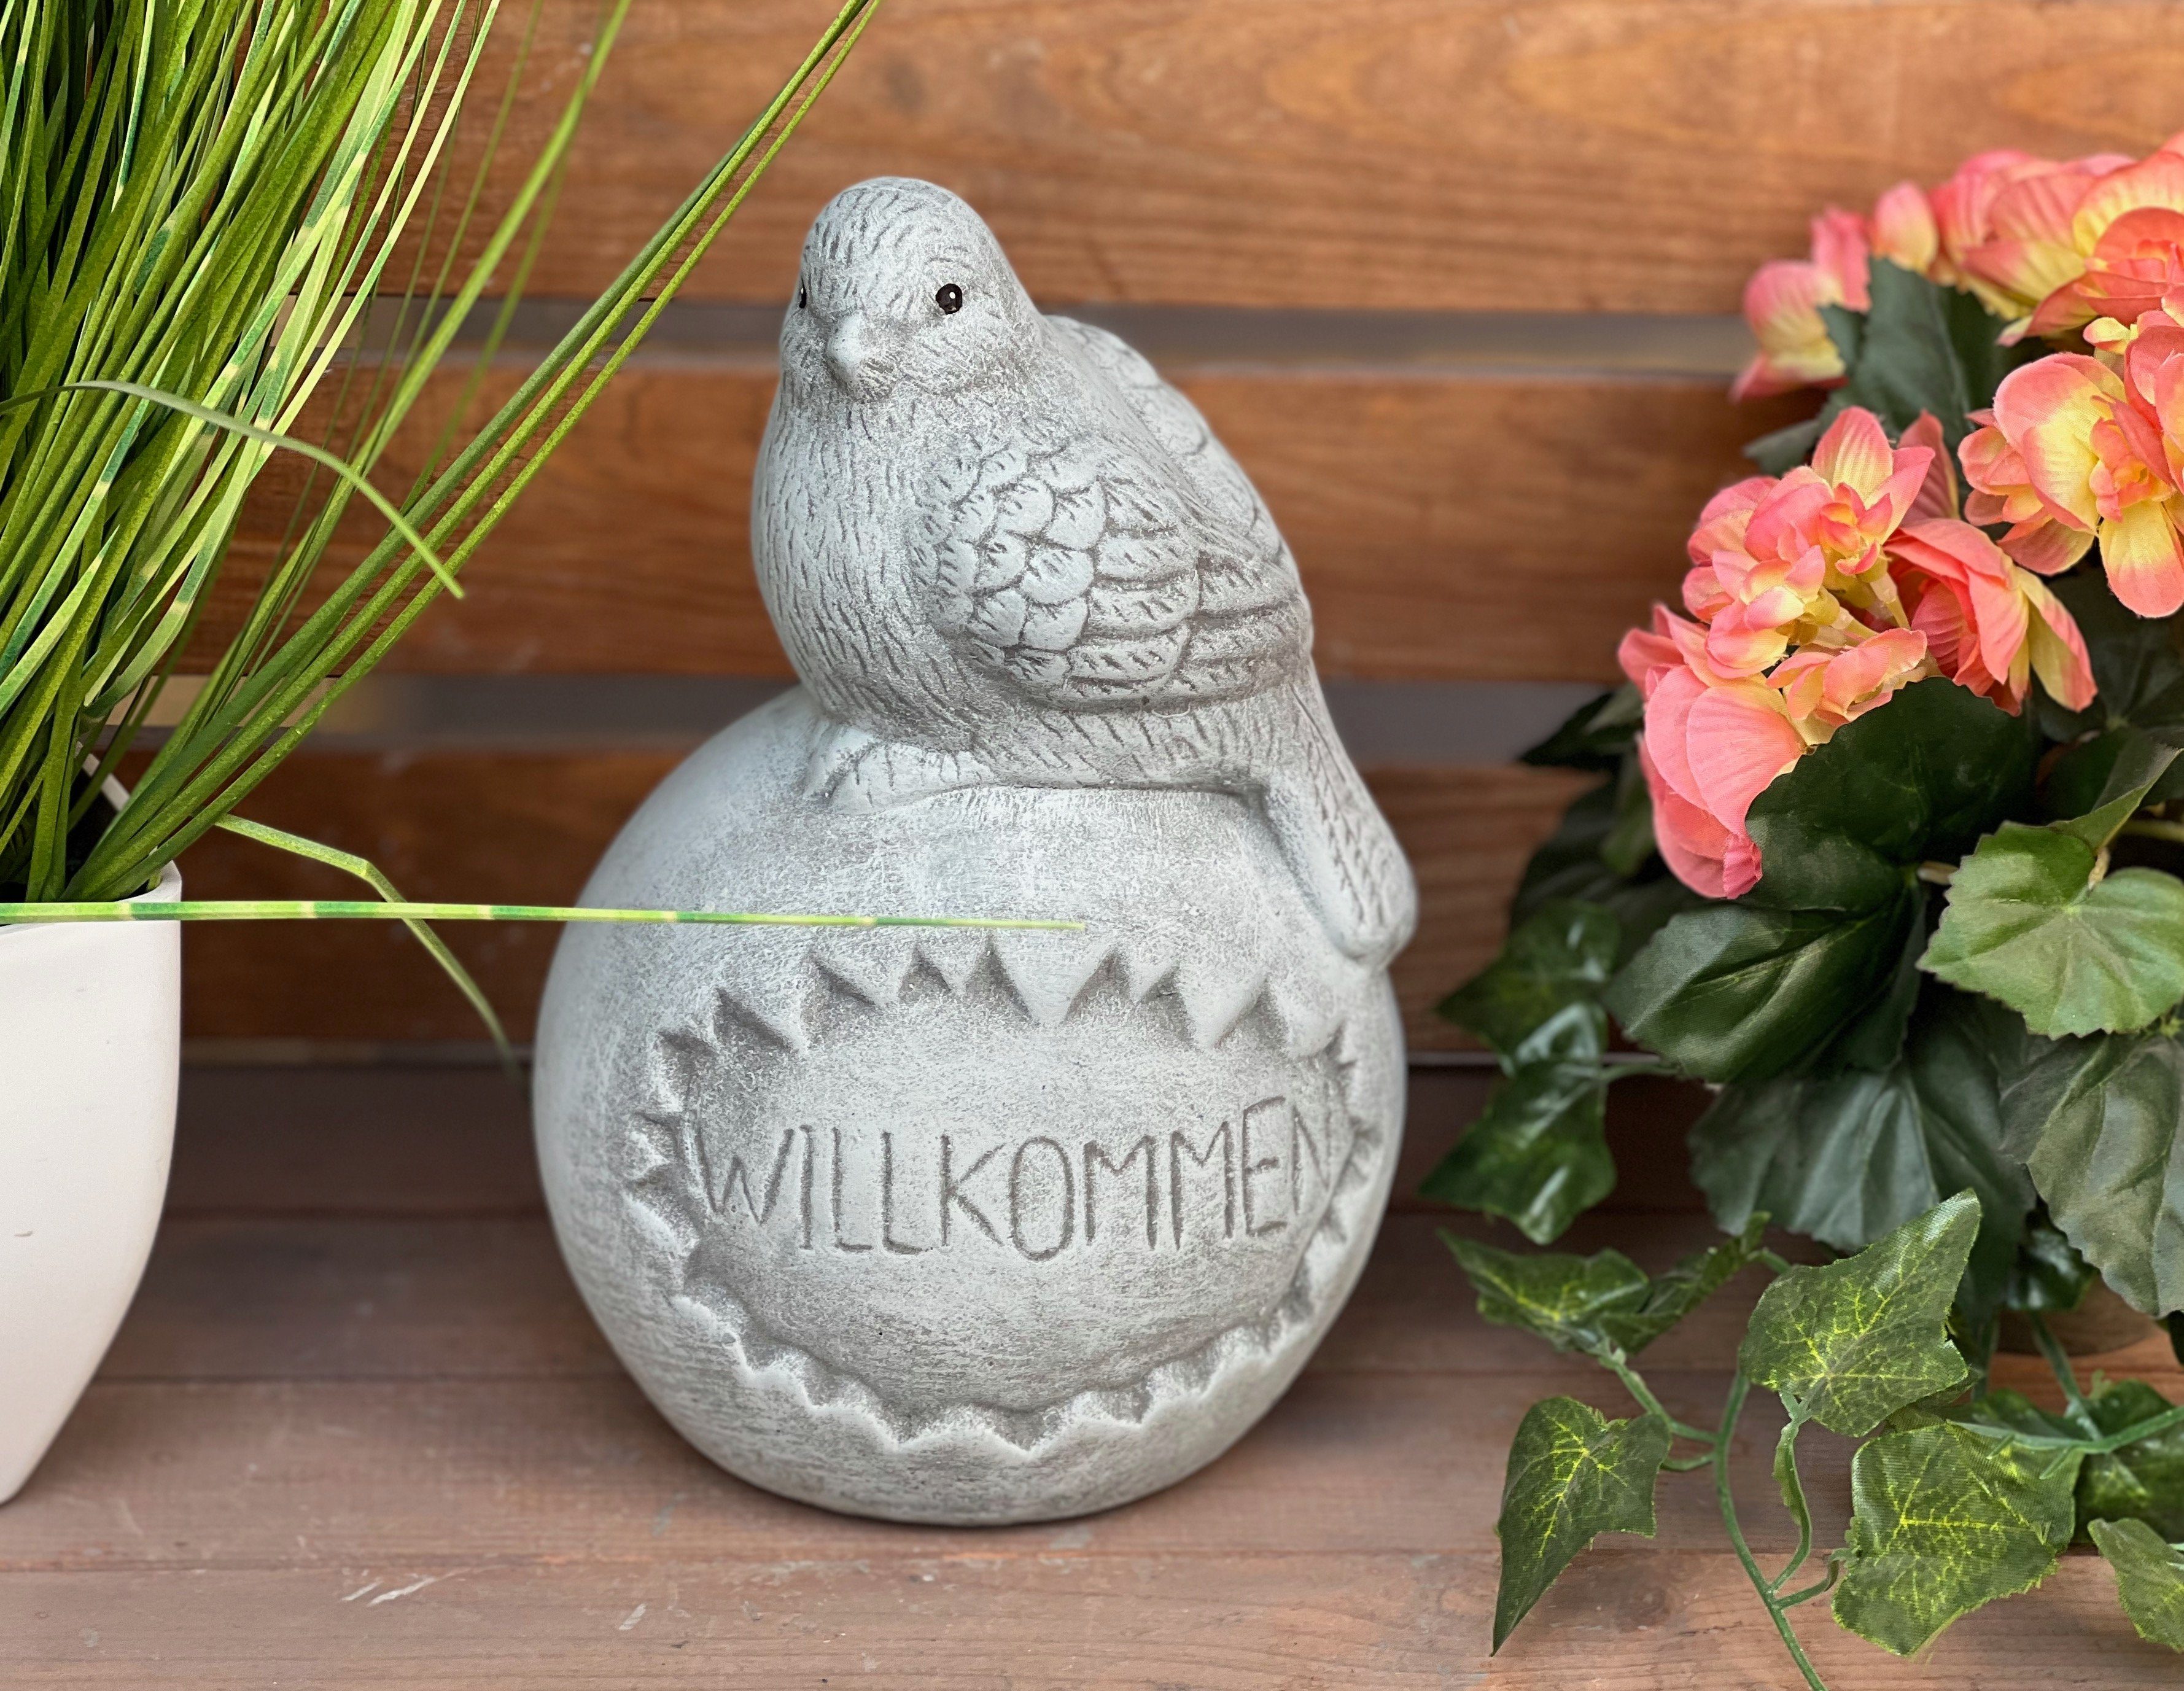 Stone and Style Gartenfigur Steinfigur "Willkommen", Kugel frostfest Steinguss auf Vogel